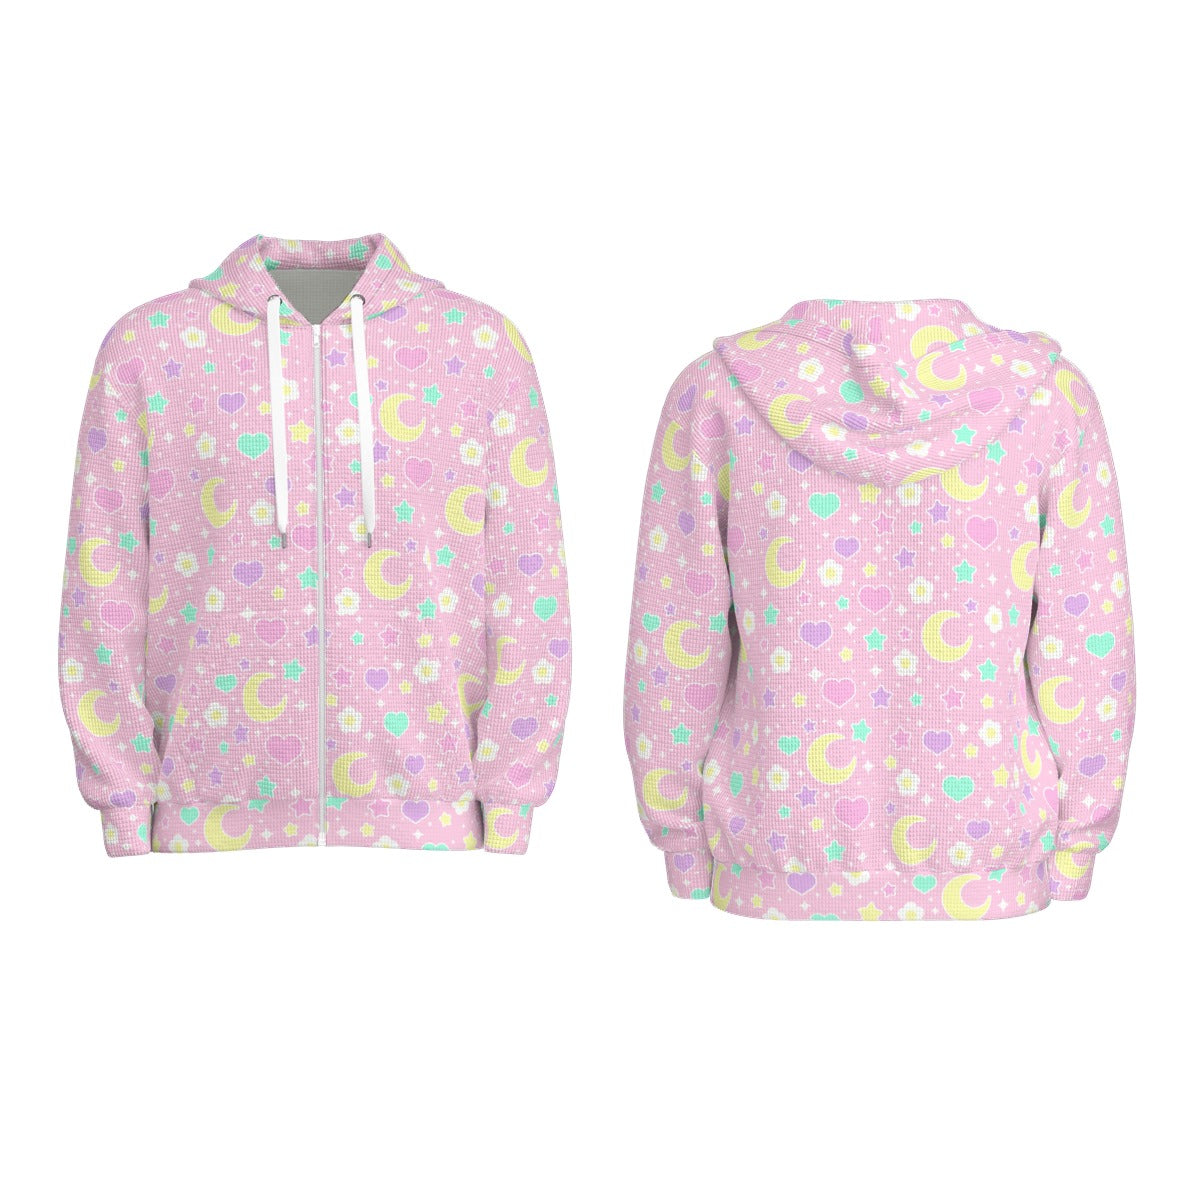 Magical Spring All-Over Print Unisex Zip Hoodie Sweatshirt (Pink)